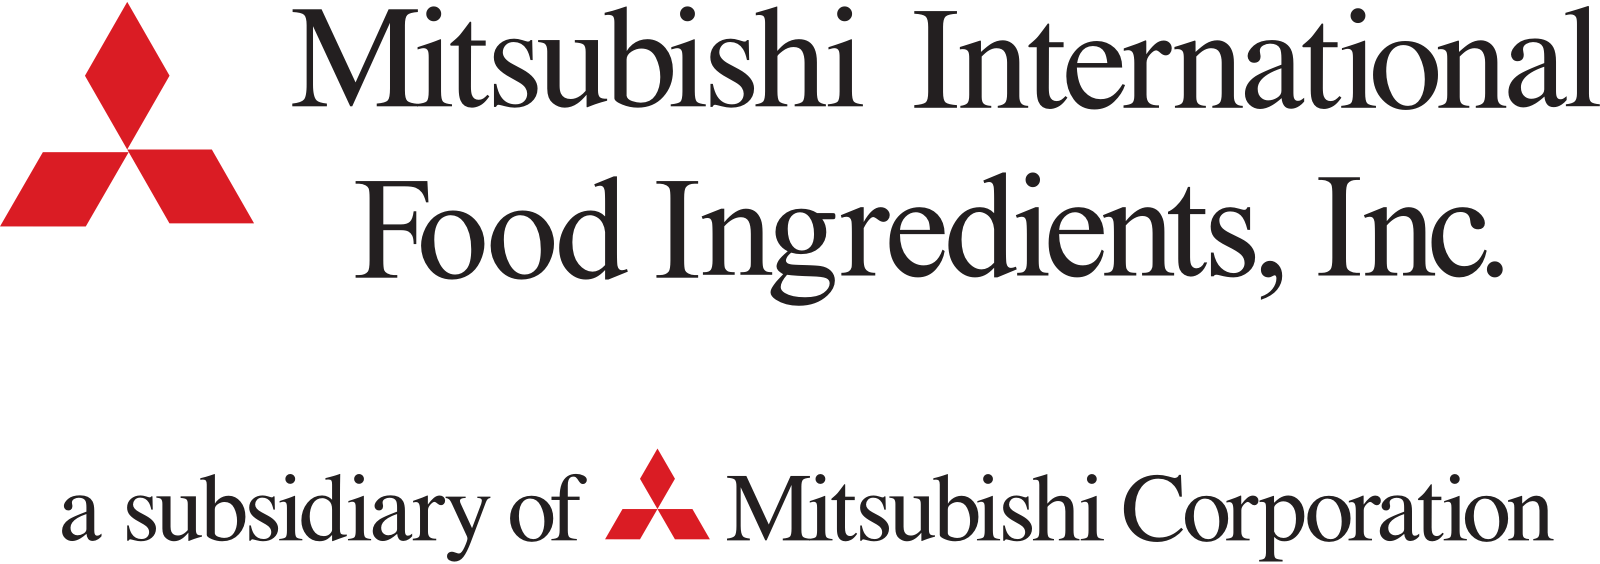 ingredients, ingredient, distributor, manufacturer, food, nutritional, pharmaceutical, mitsubishi